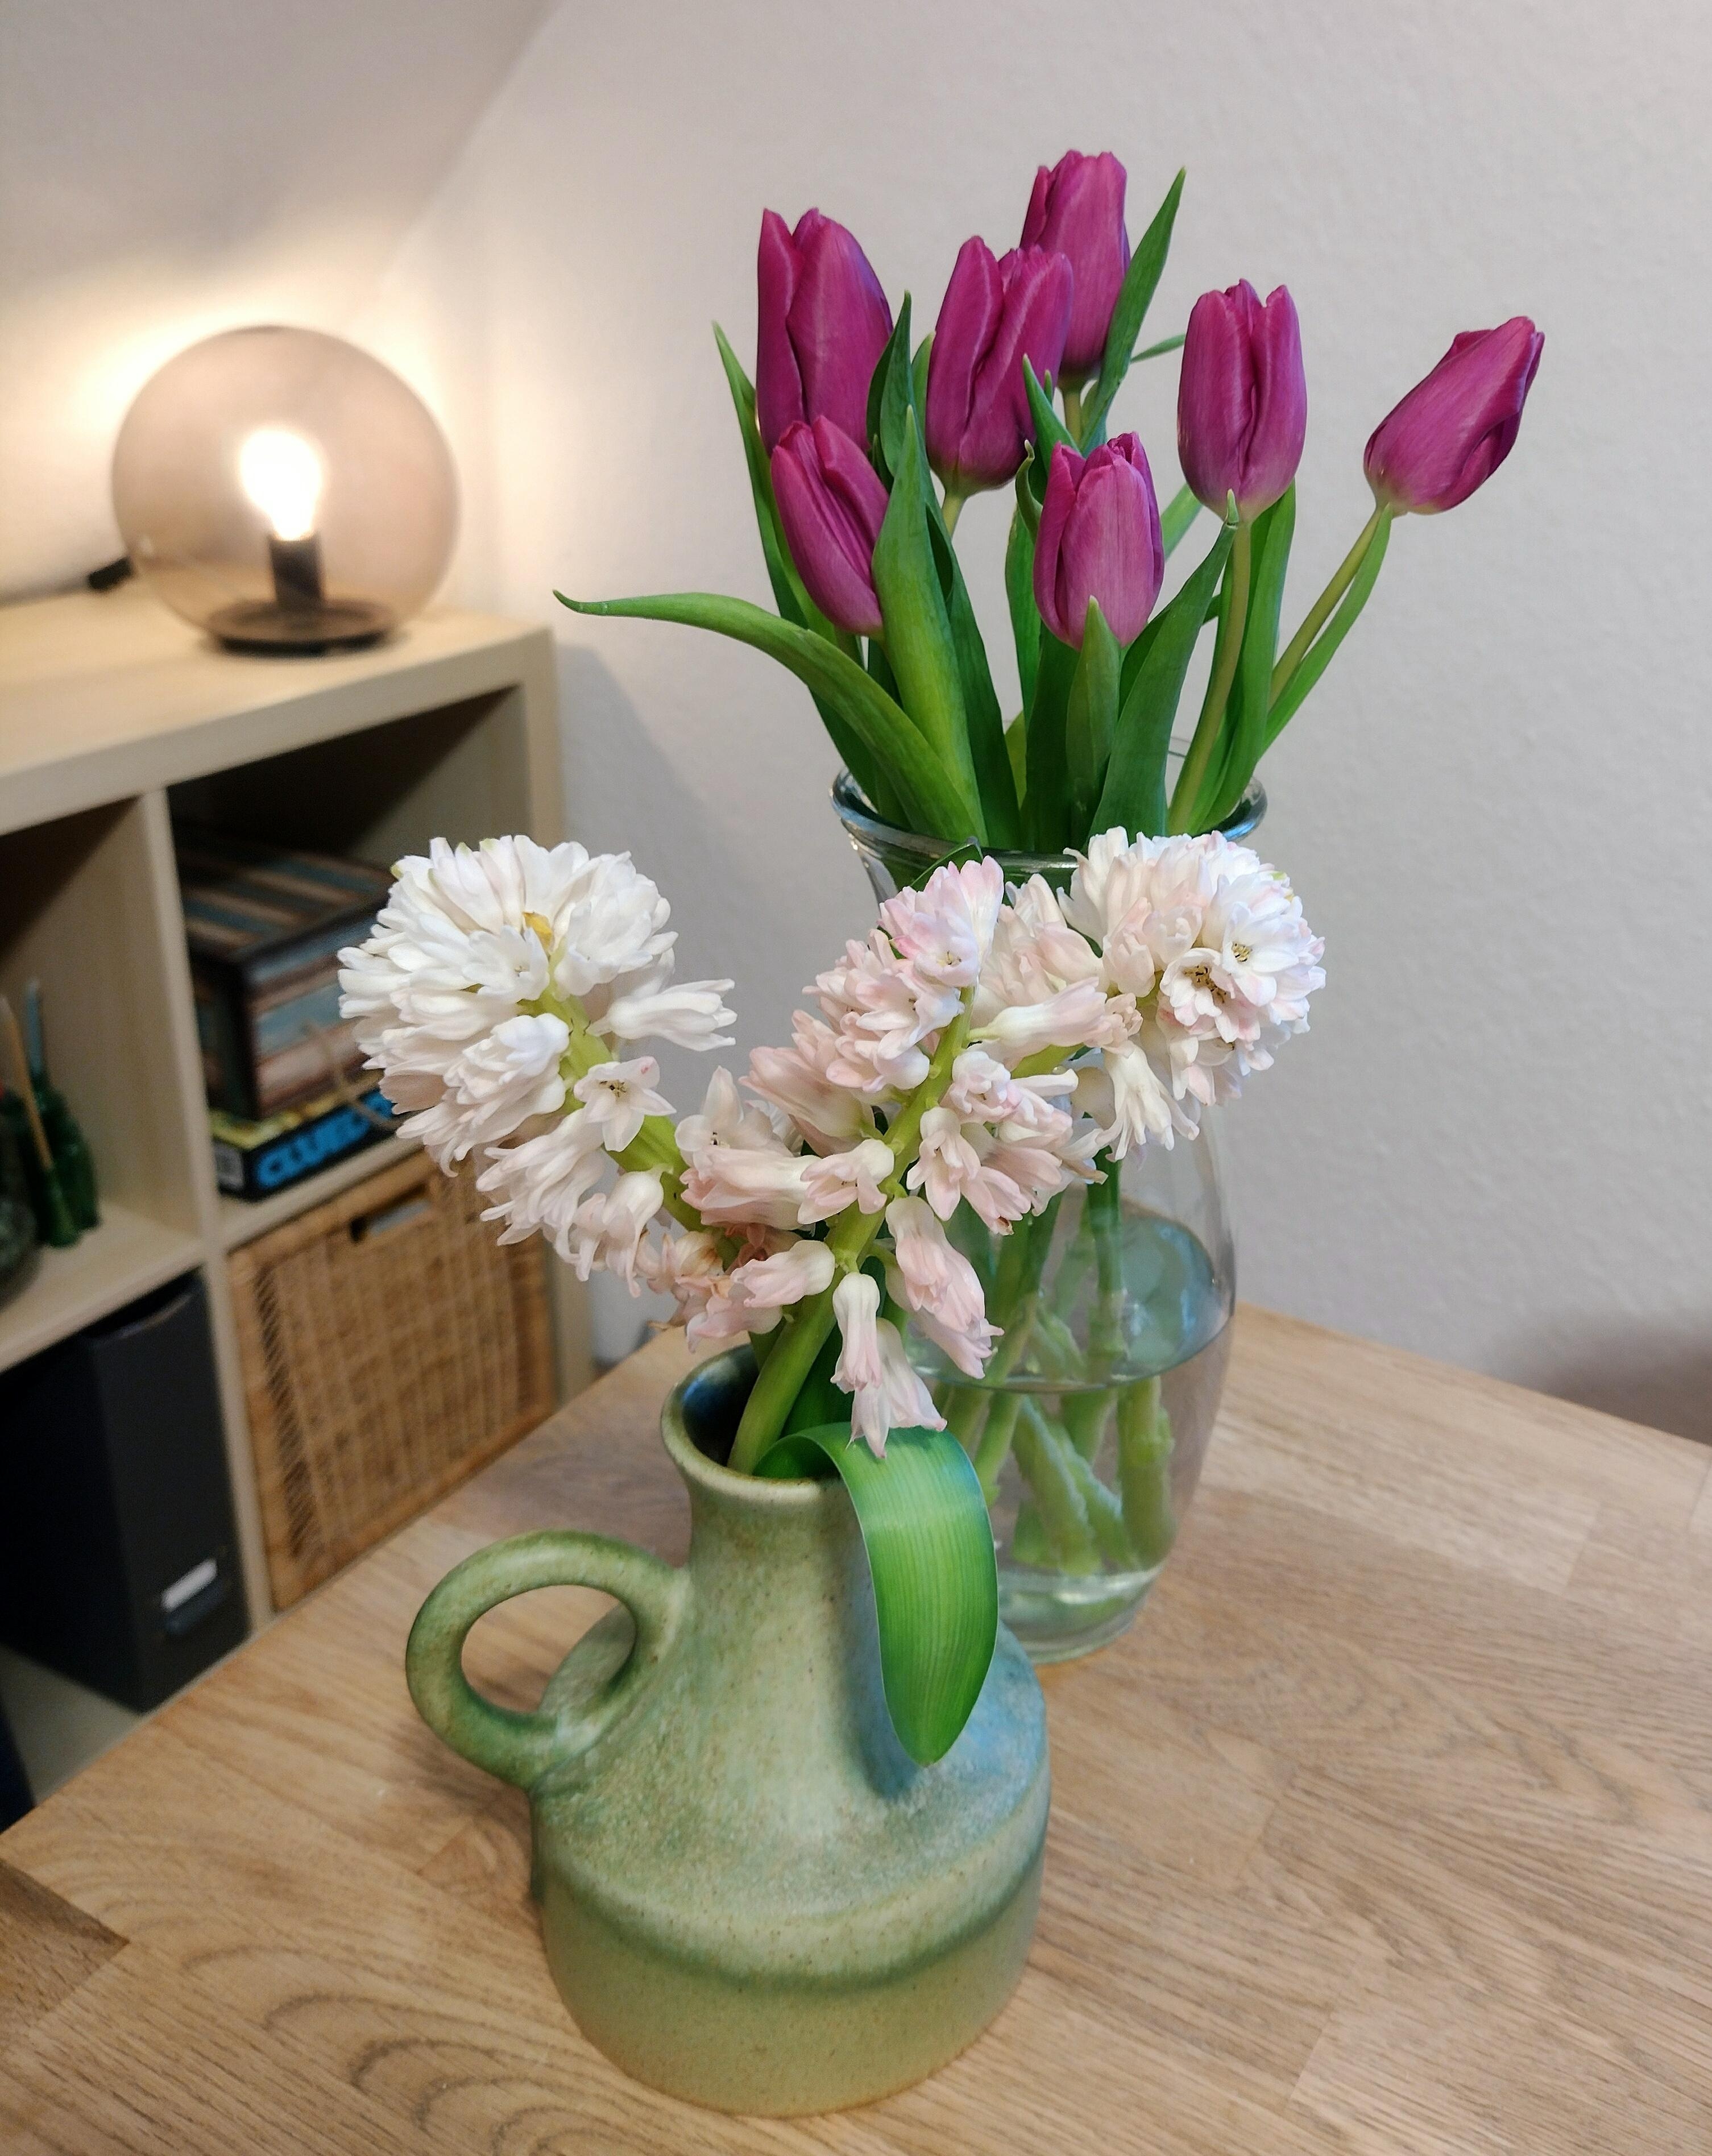 Noch mehr frische Blumen 😍 #tulpen #hyacinthen #frischeblumen #blumenliebe #vase #lampe